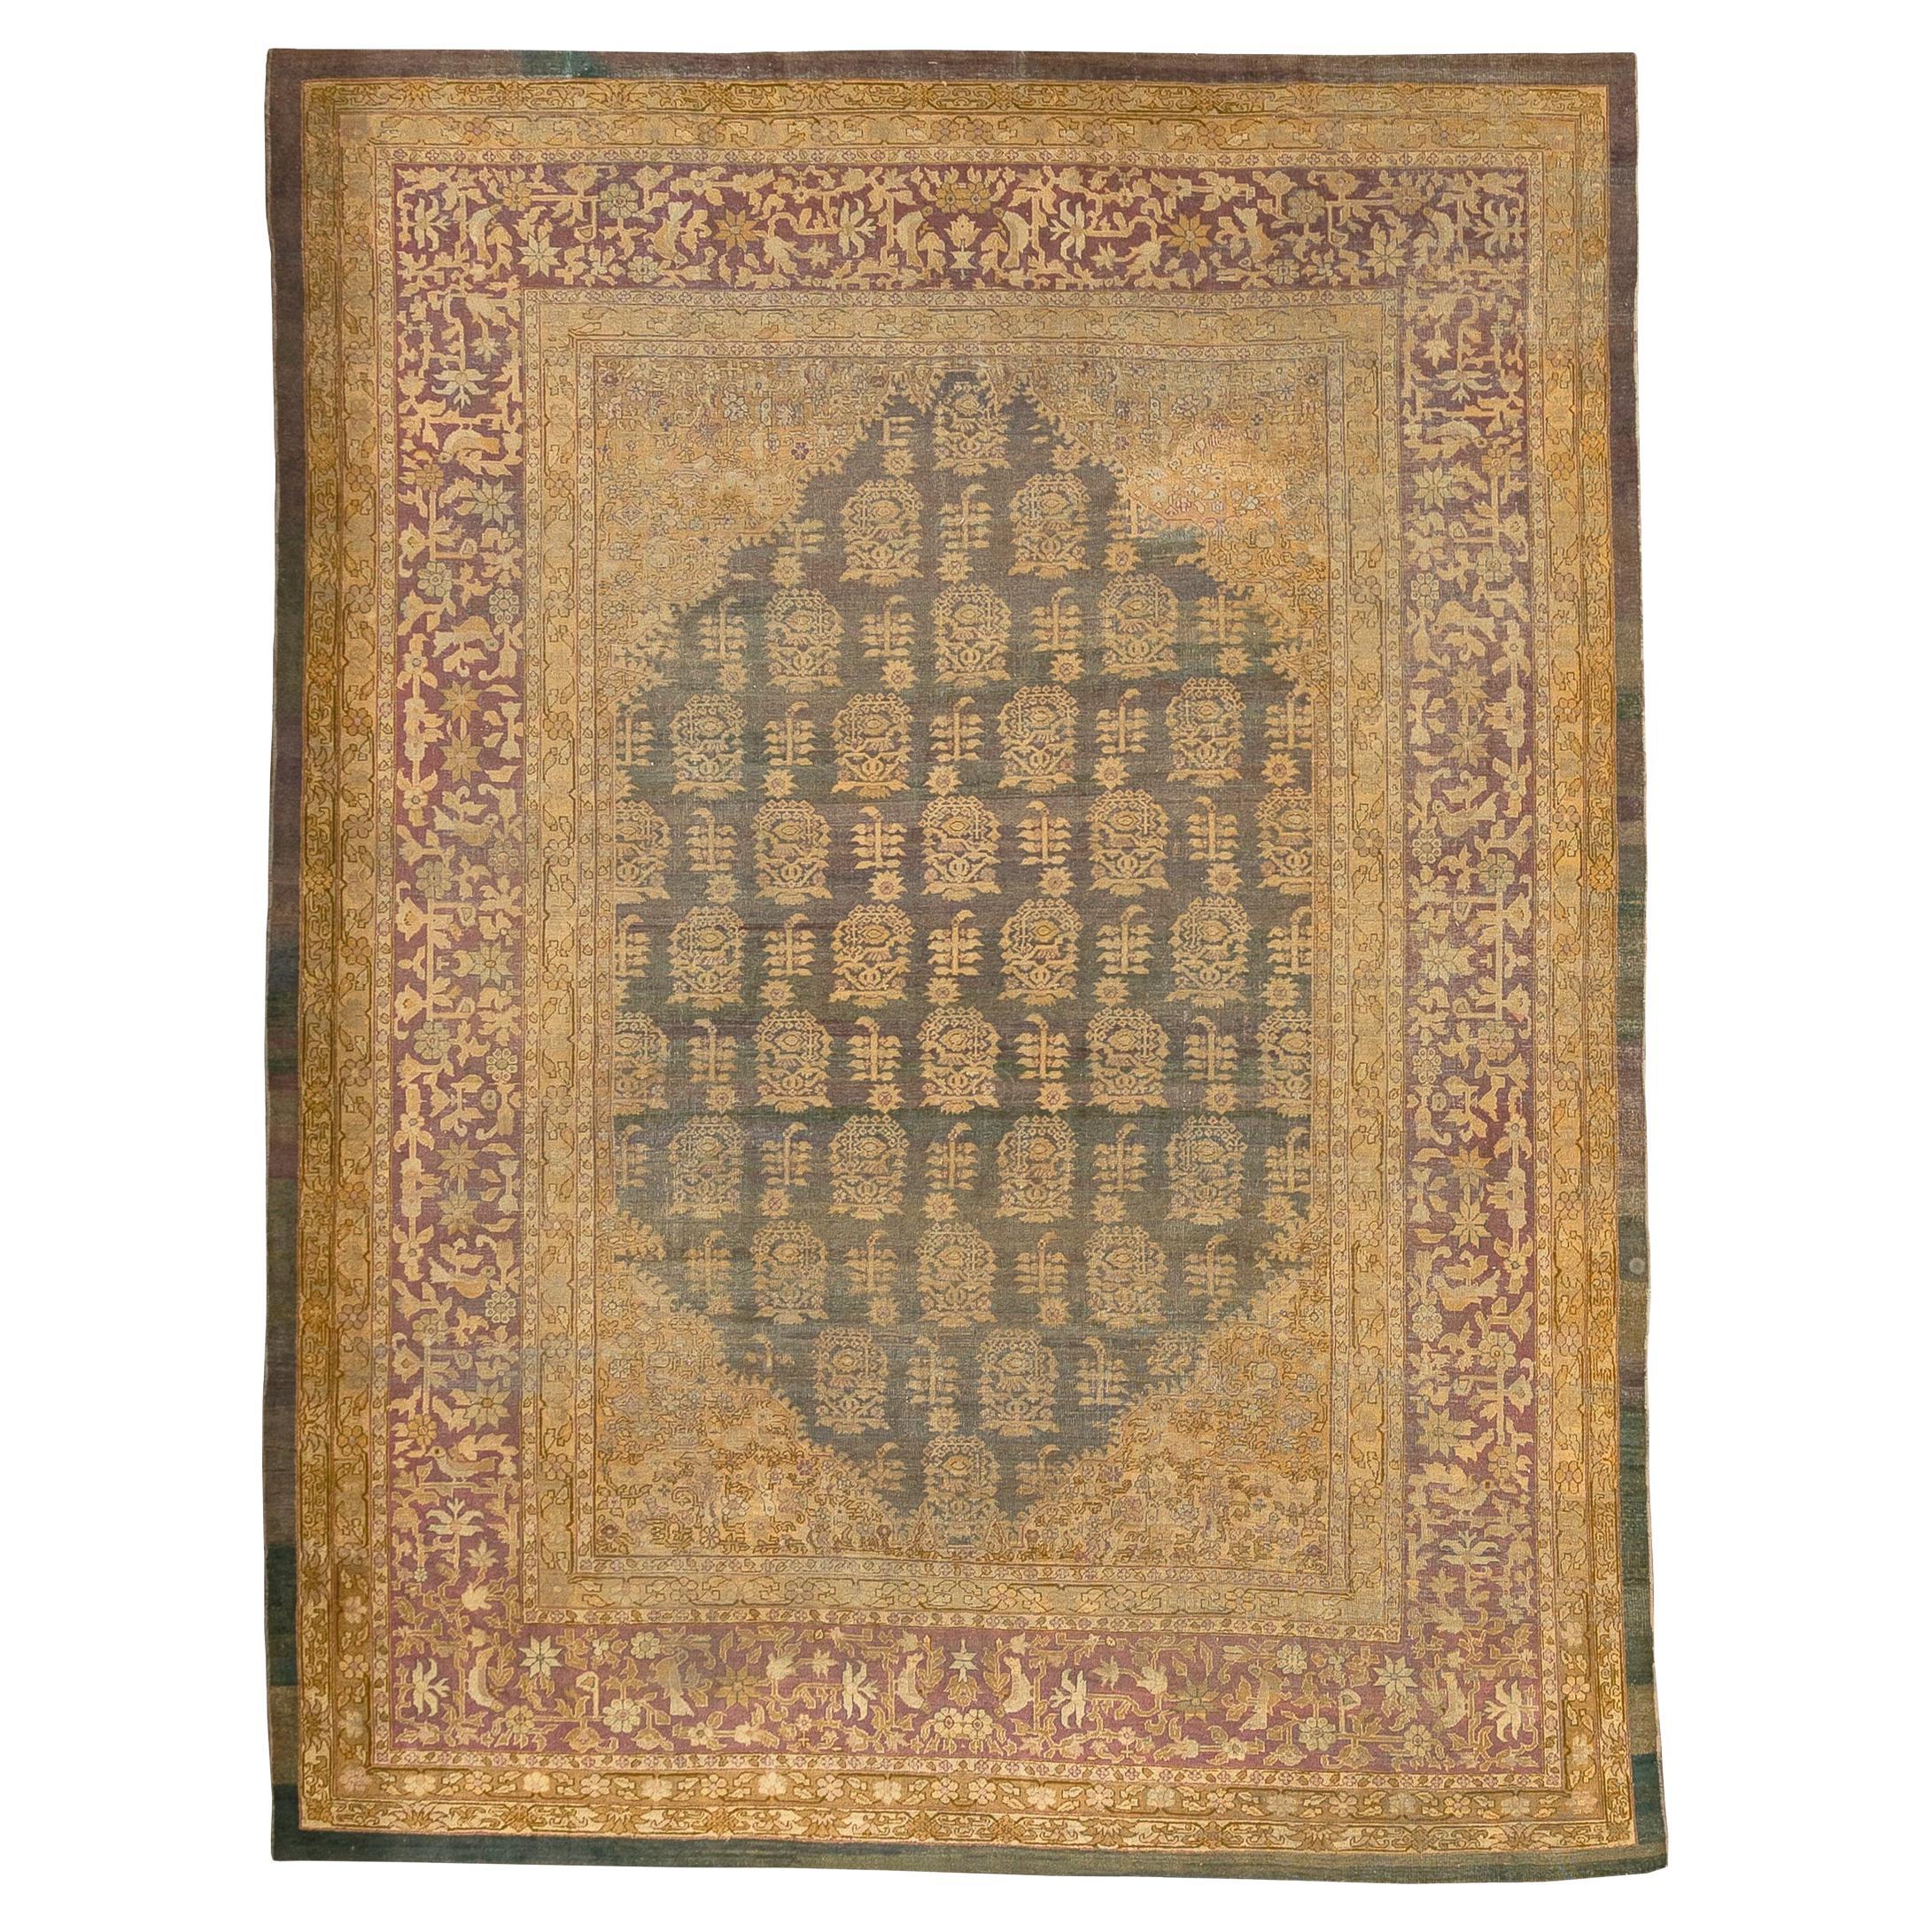 19th Century Antique Agra Rug 